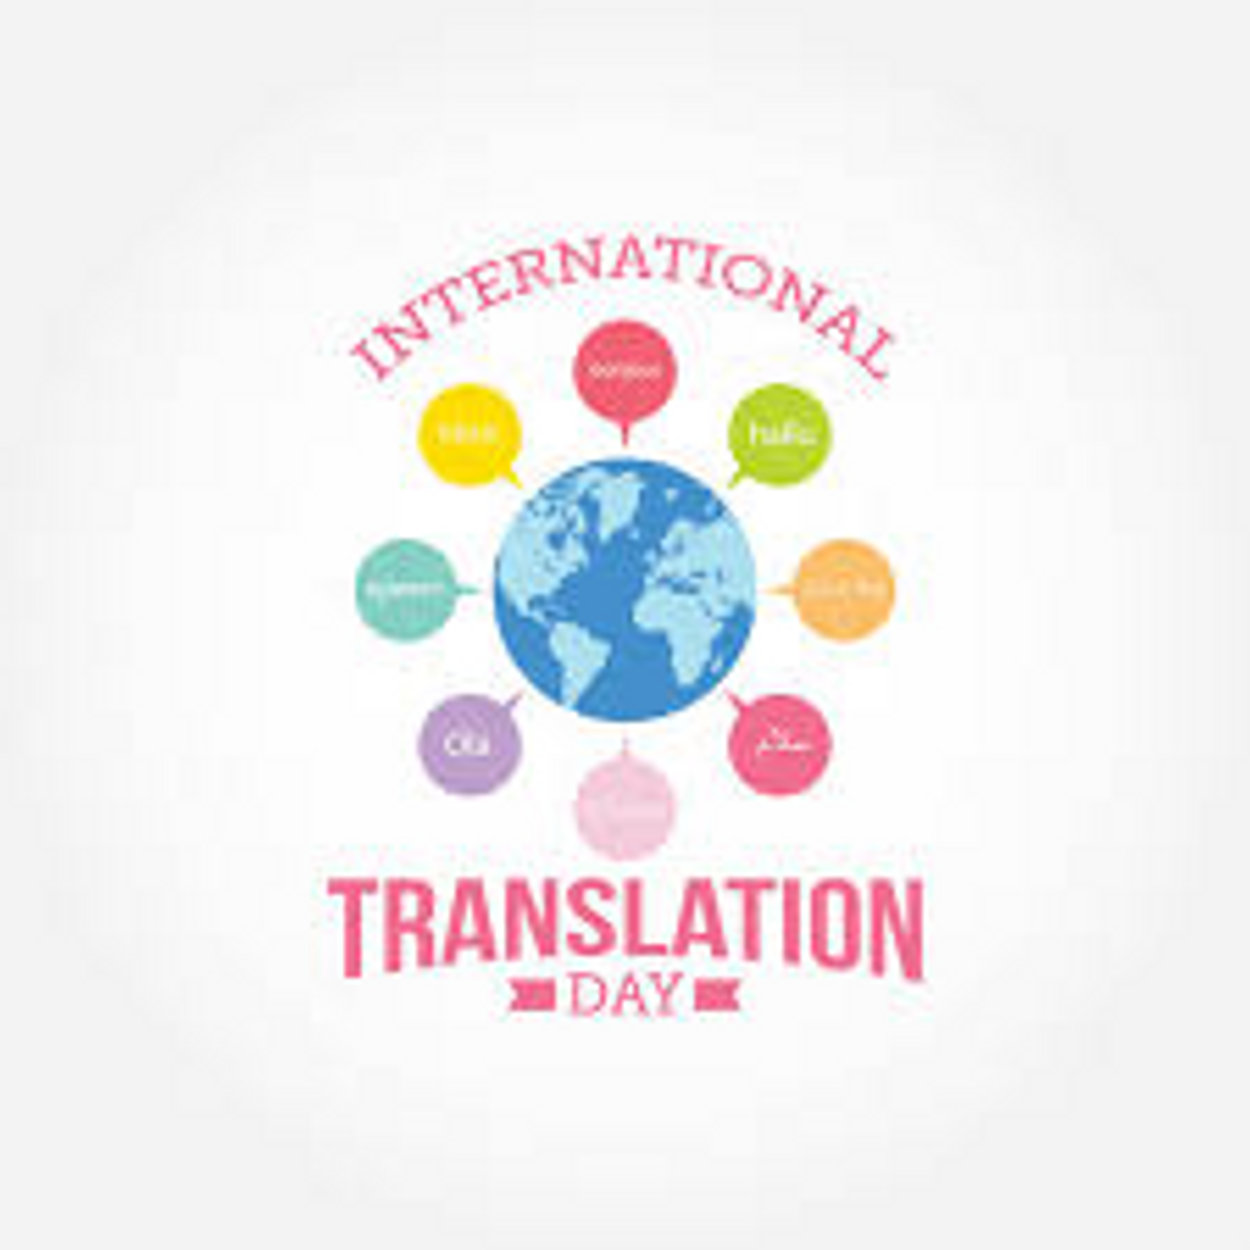 अंतर्राष्ट्रीय अनुवाद दिवस विशेष-जिन्हें हम हिन्दी समझते है, वह अंग्रेजी के शब्द, उनका अनुवाद अंग्रेजी से मुश्किल